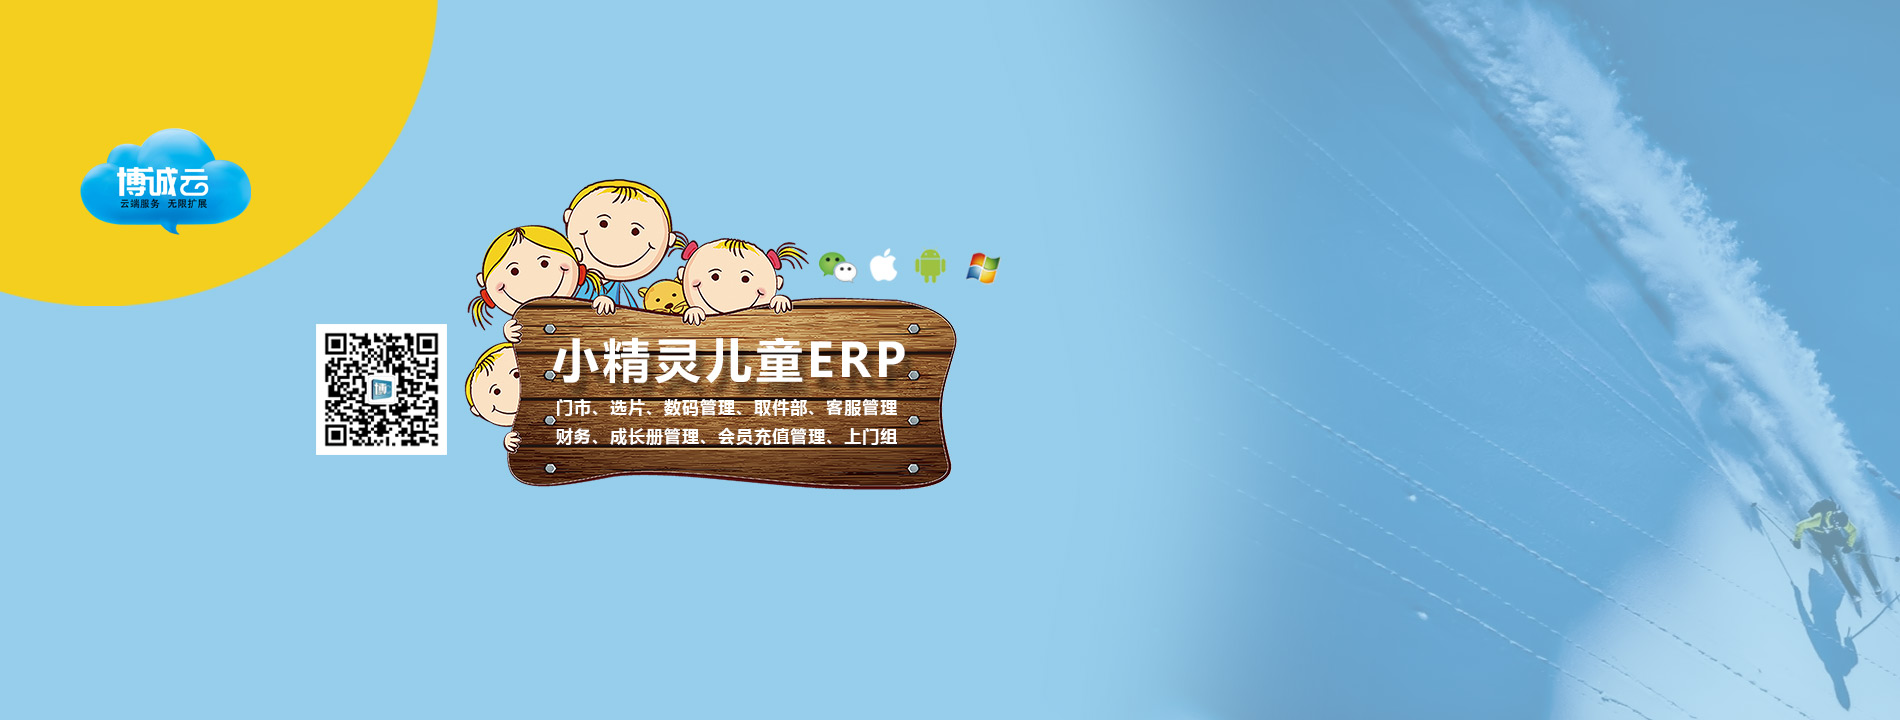 儿童摄影管理软件ERP